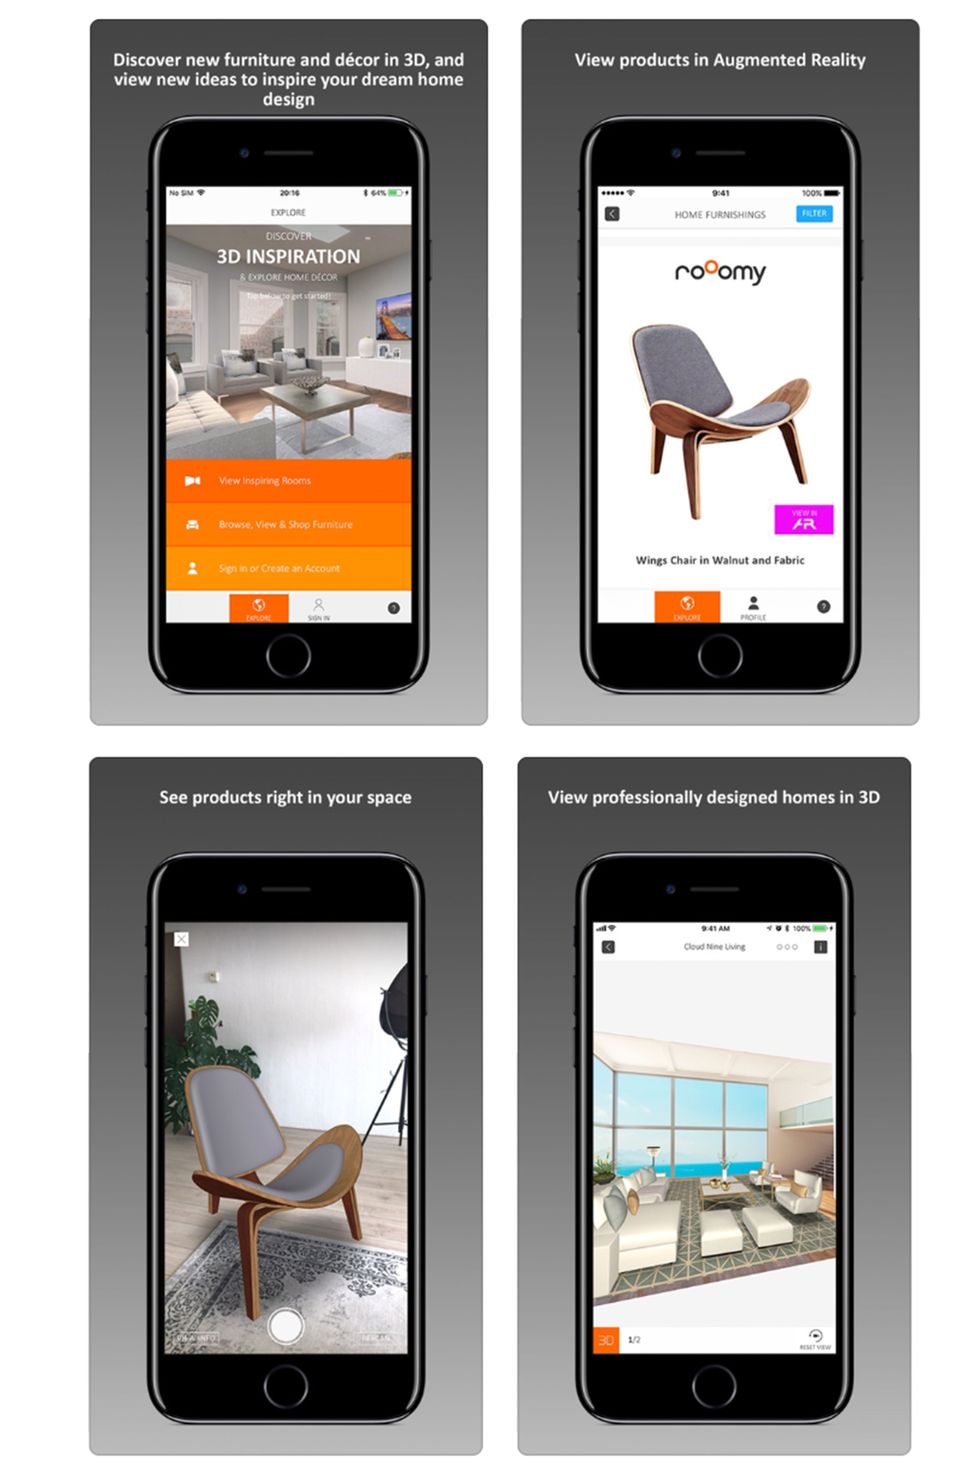 10+ Genius Interior Design Apps - Simple Decorating Apps to Download